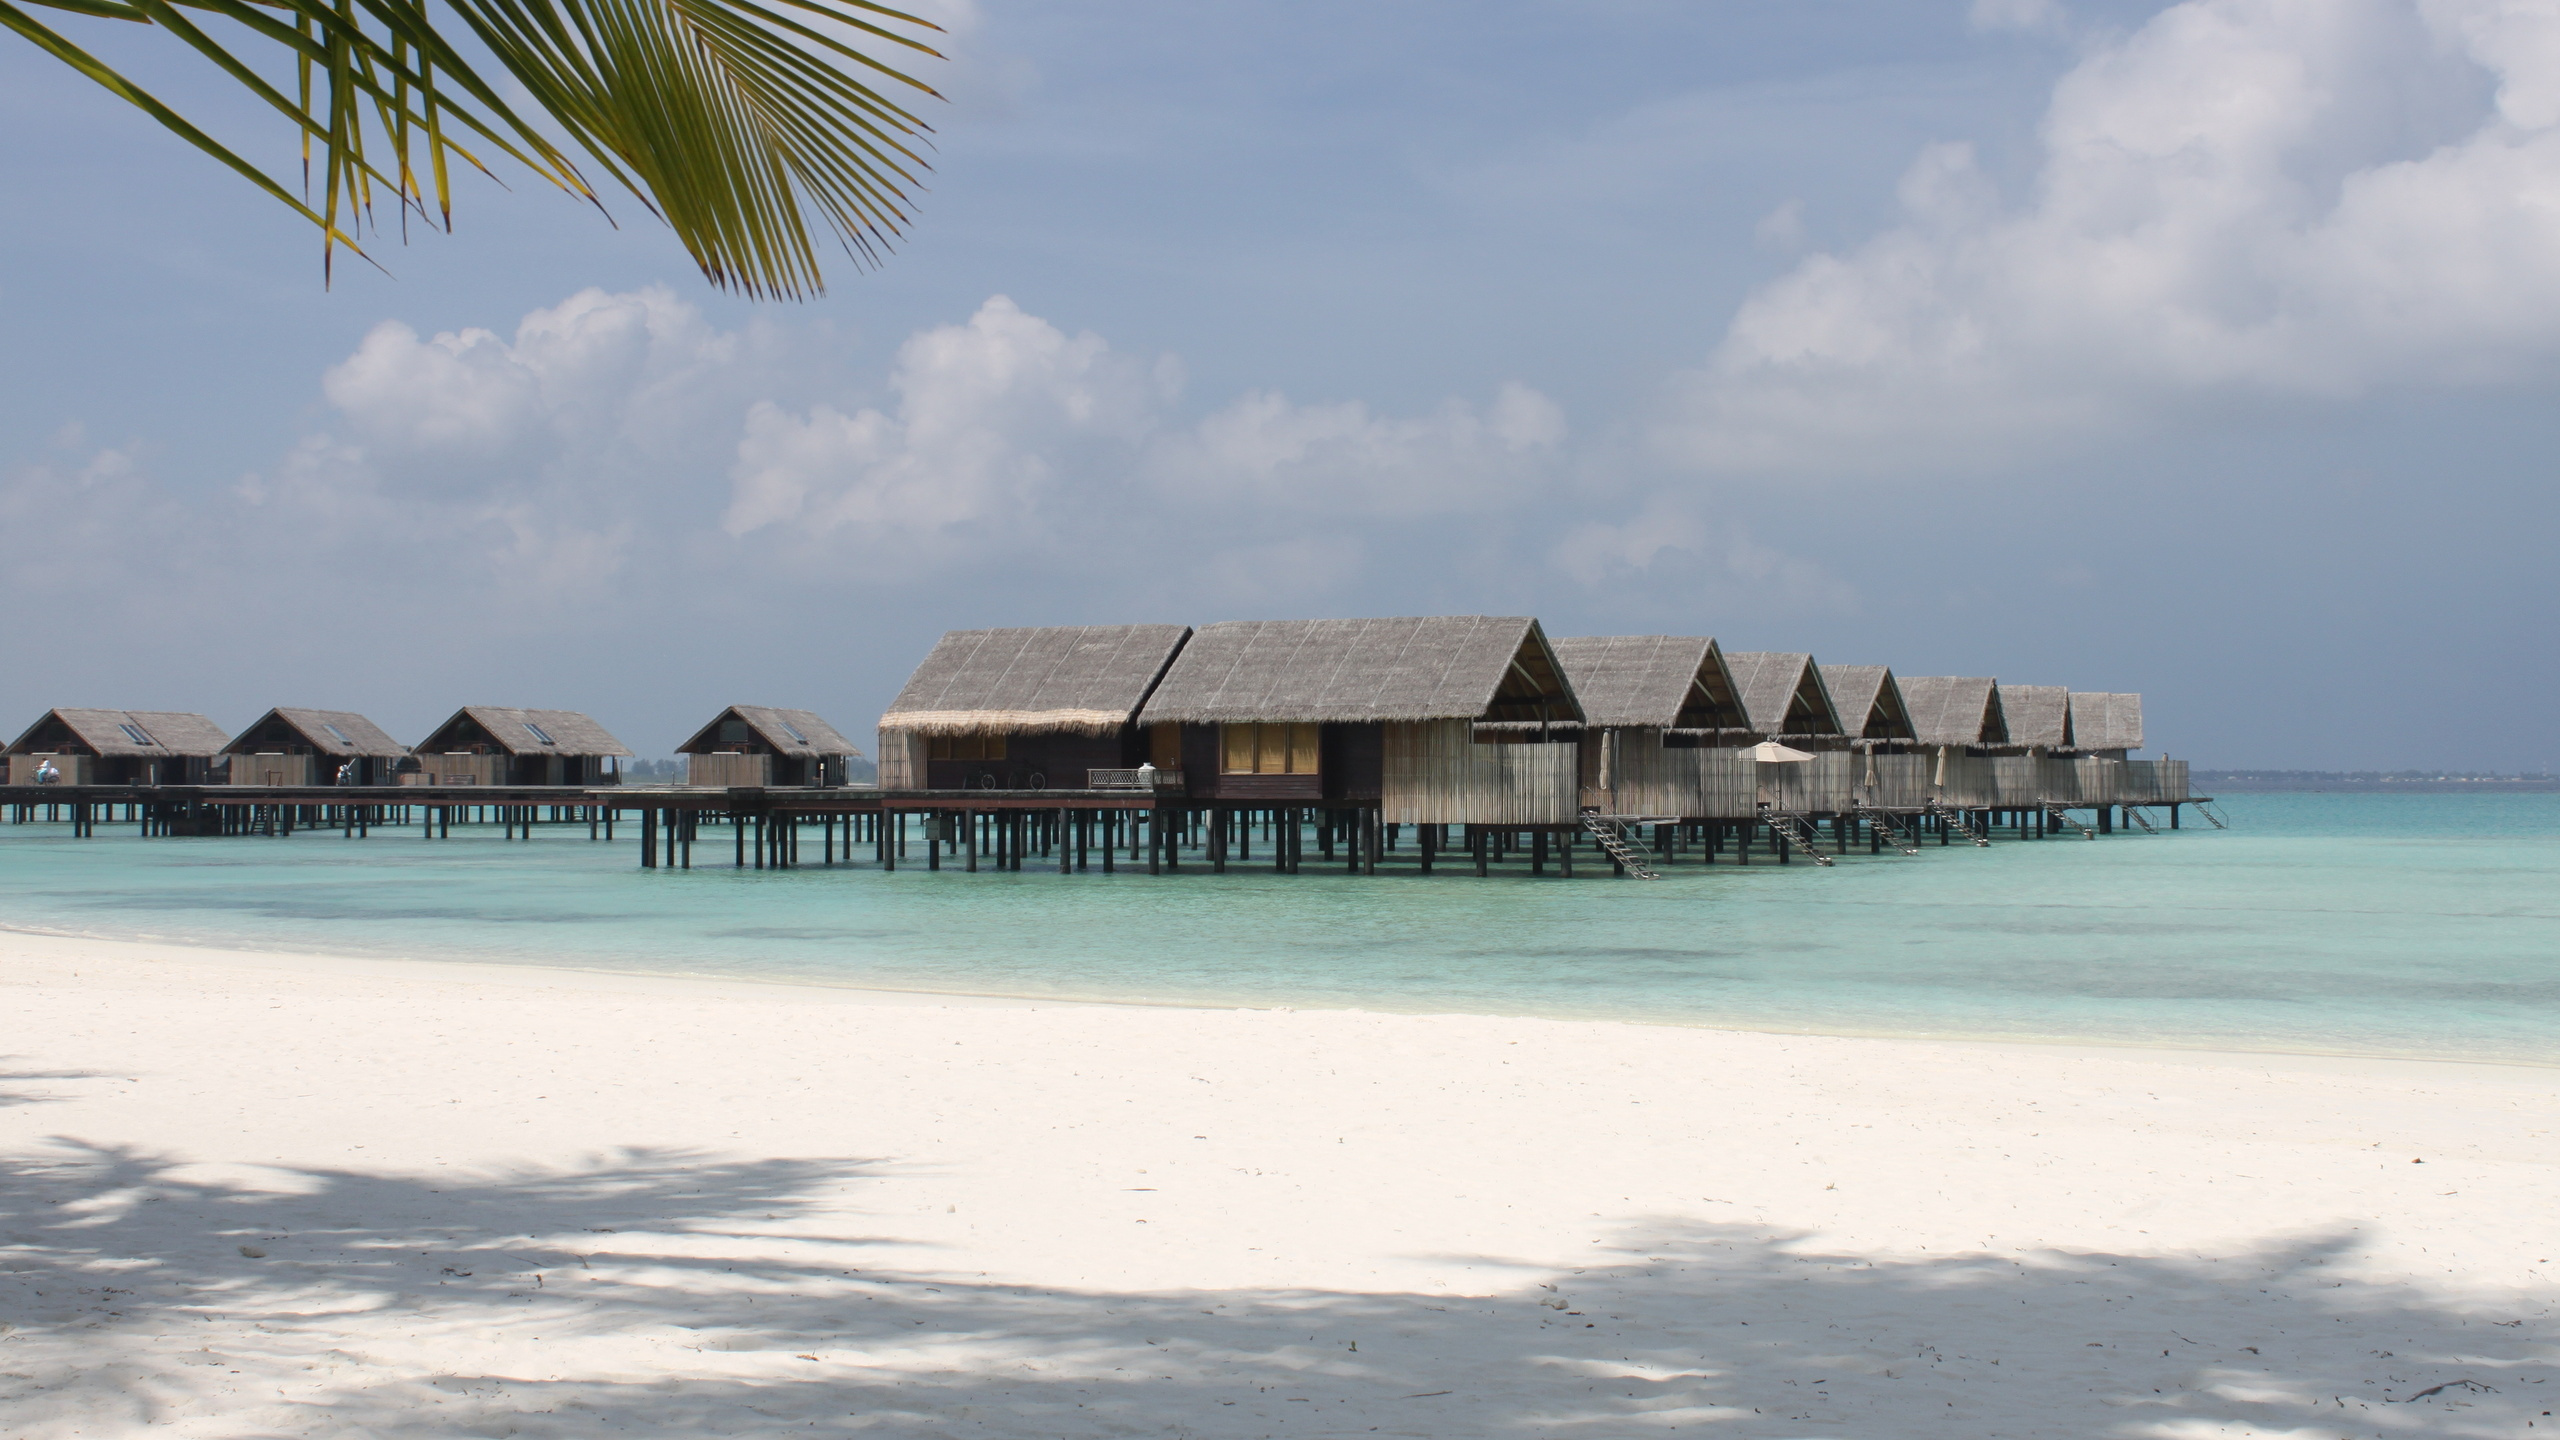 马尔代夫, 度假村, 大海, 热带地区, 加勒比 壁纸 2560x1440 允许